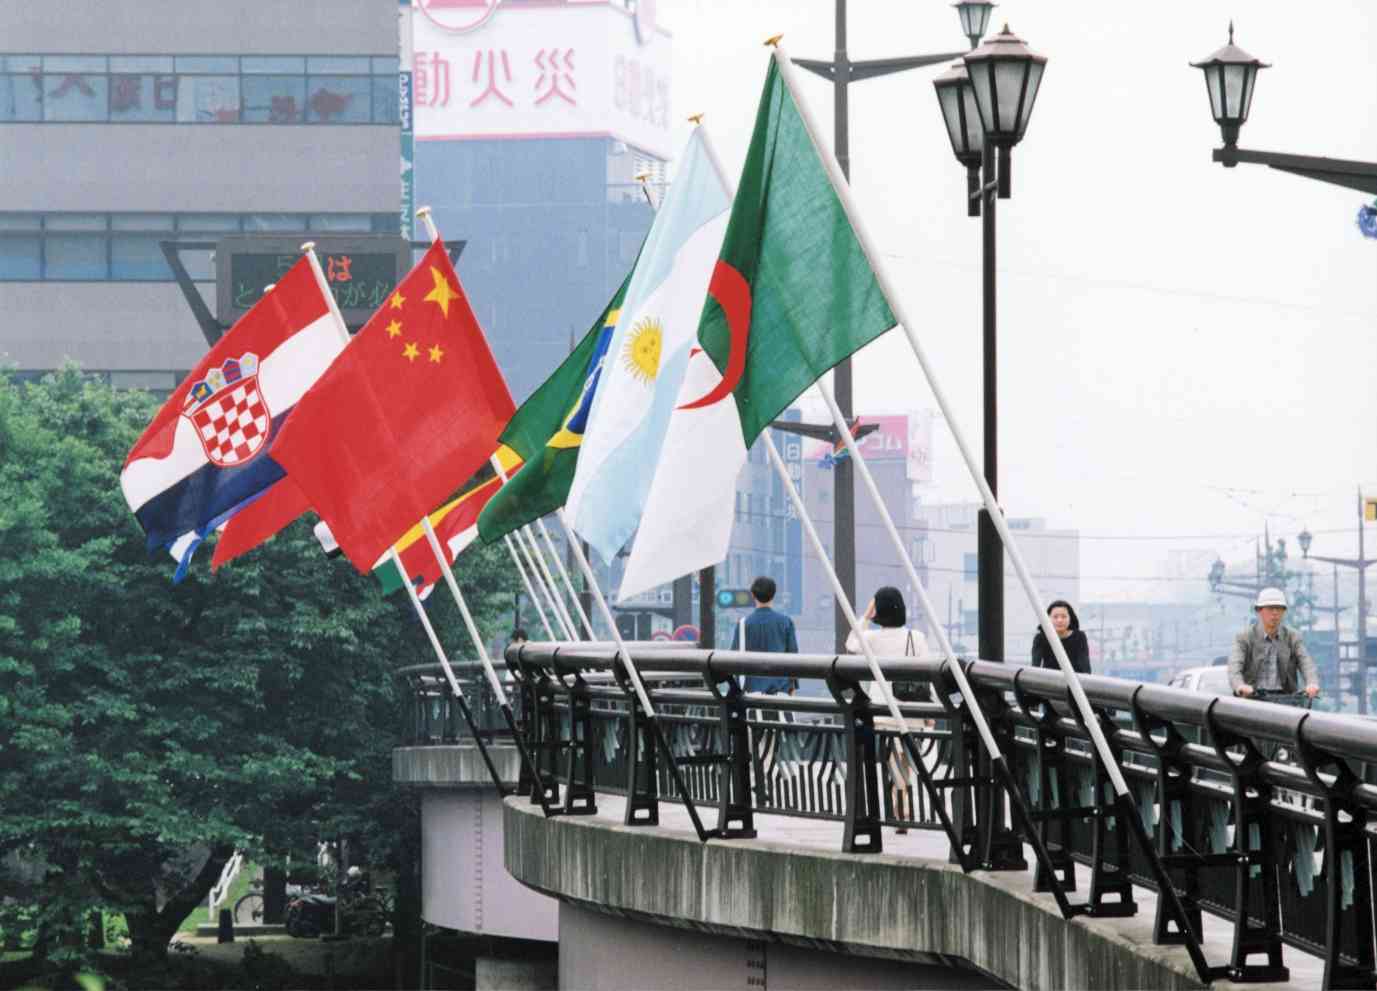 大甲橋の欄干に掲げられた世界ハンド参加国の国旗。実は「黙認」だった